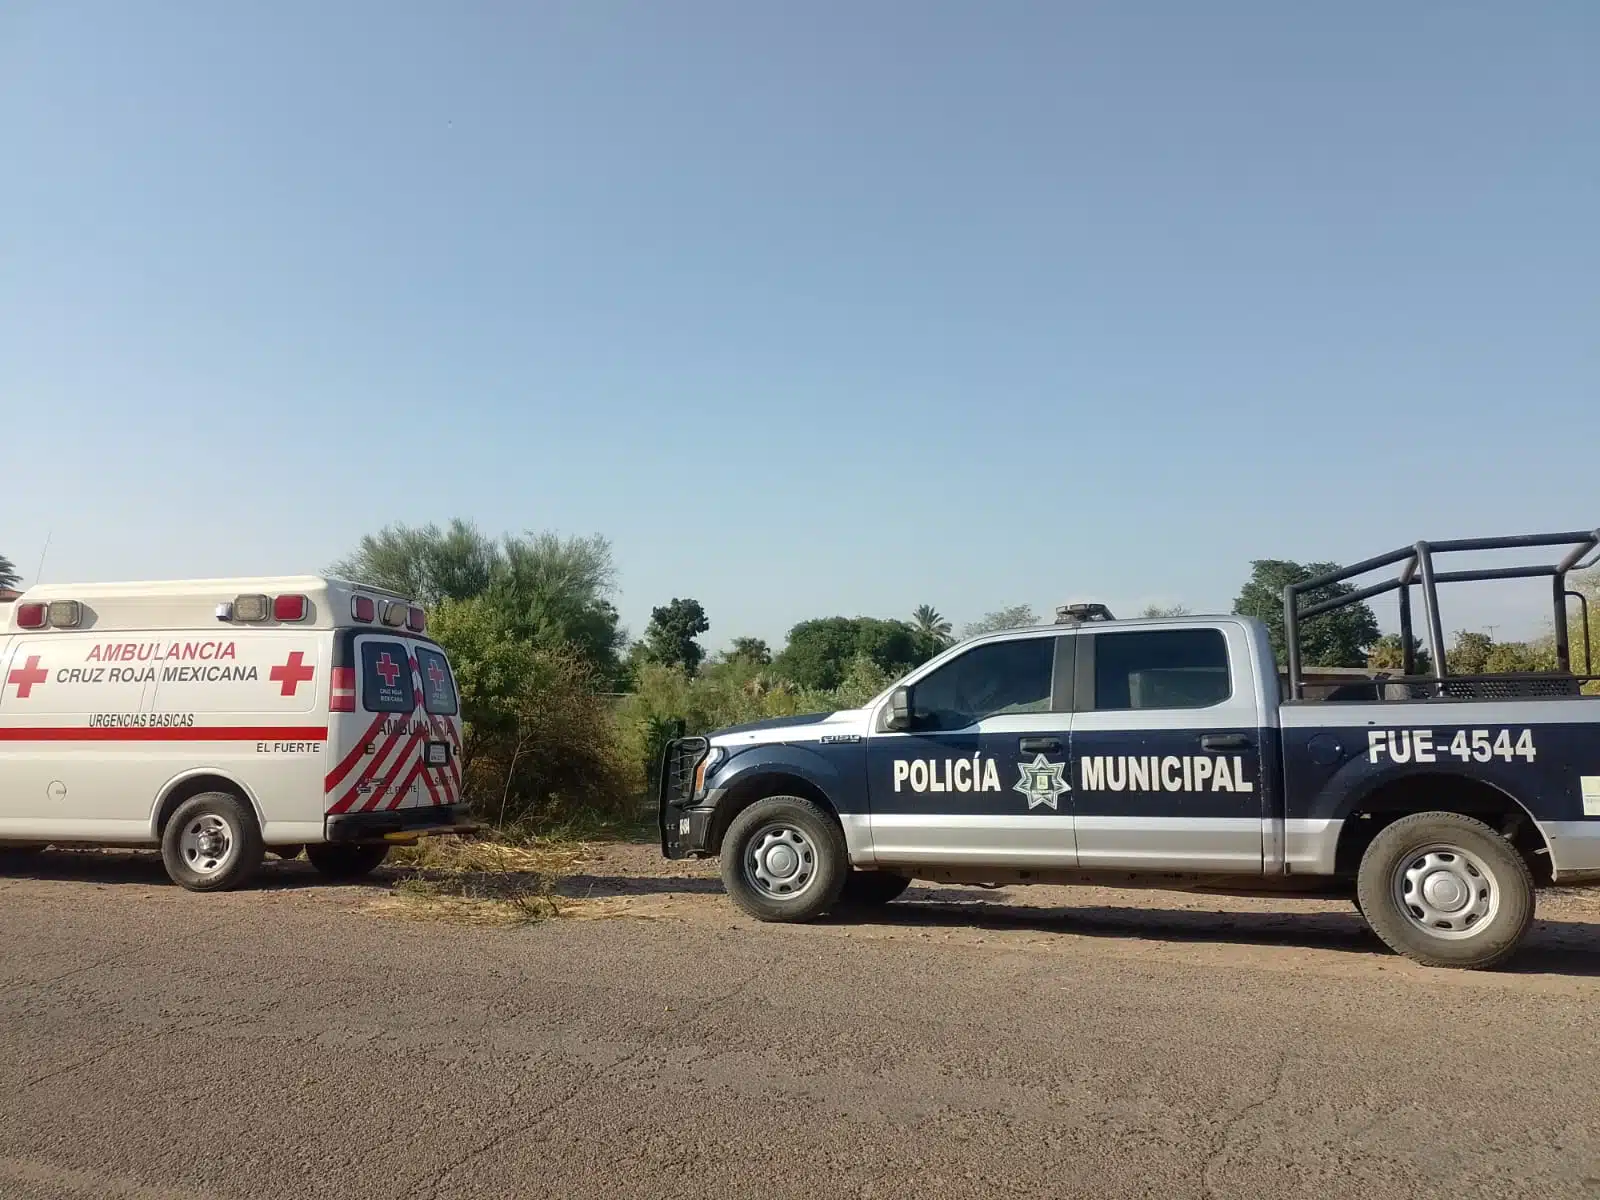 Ambulancia y Policía Municipal sobre una carretera